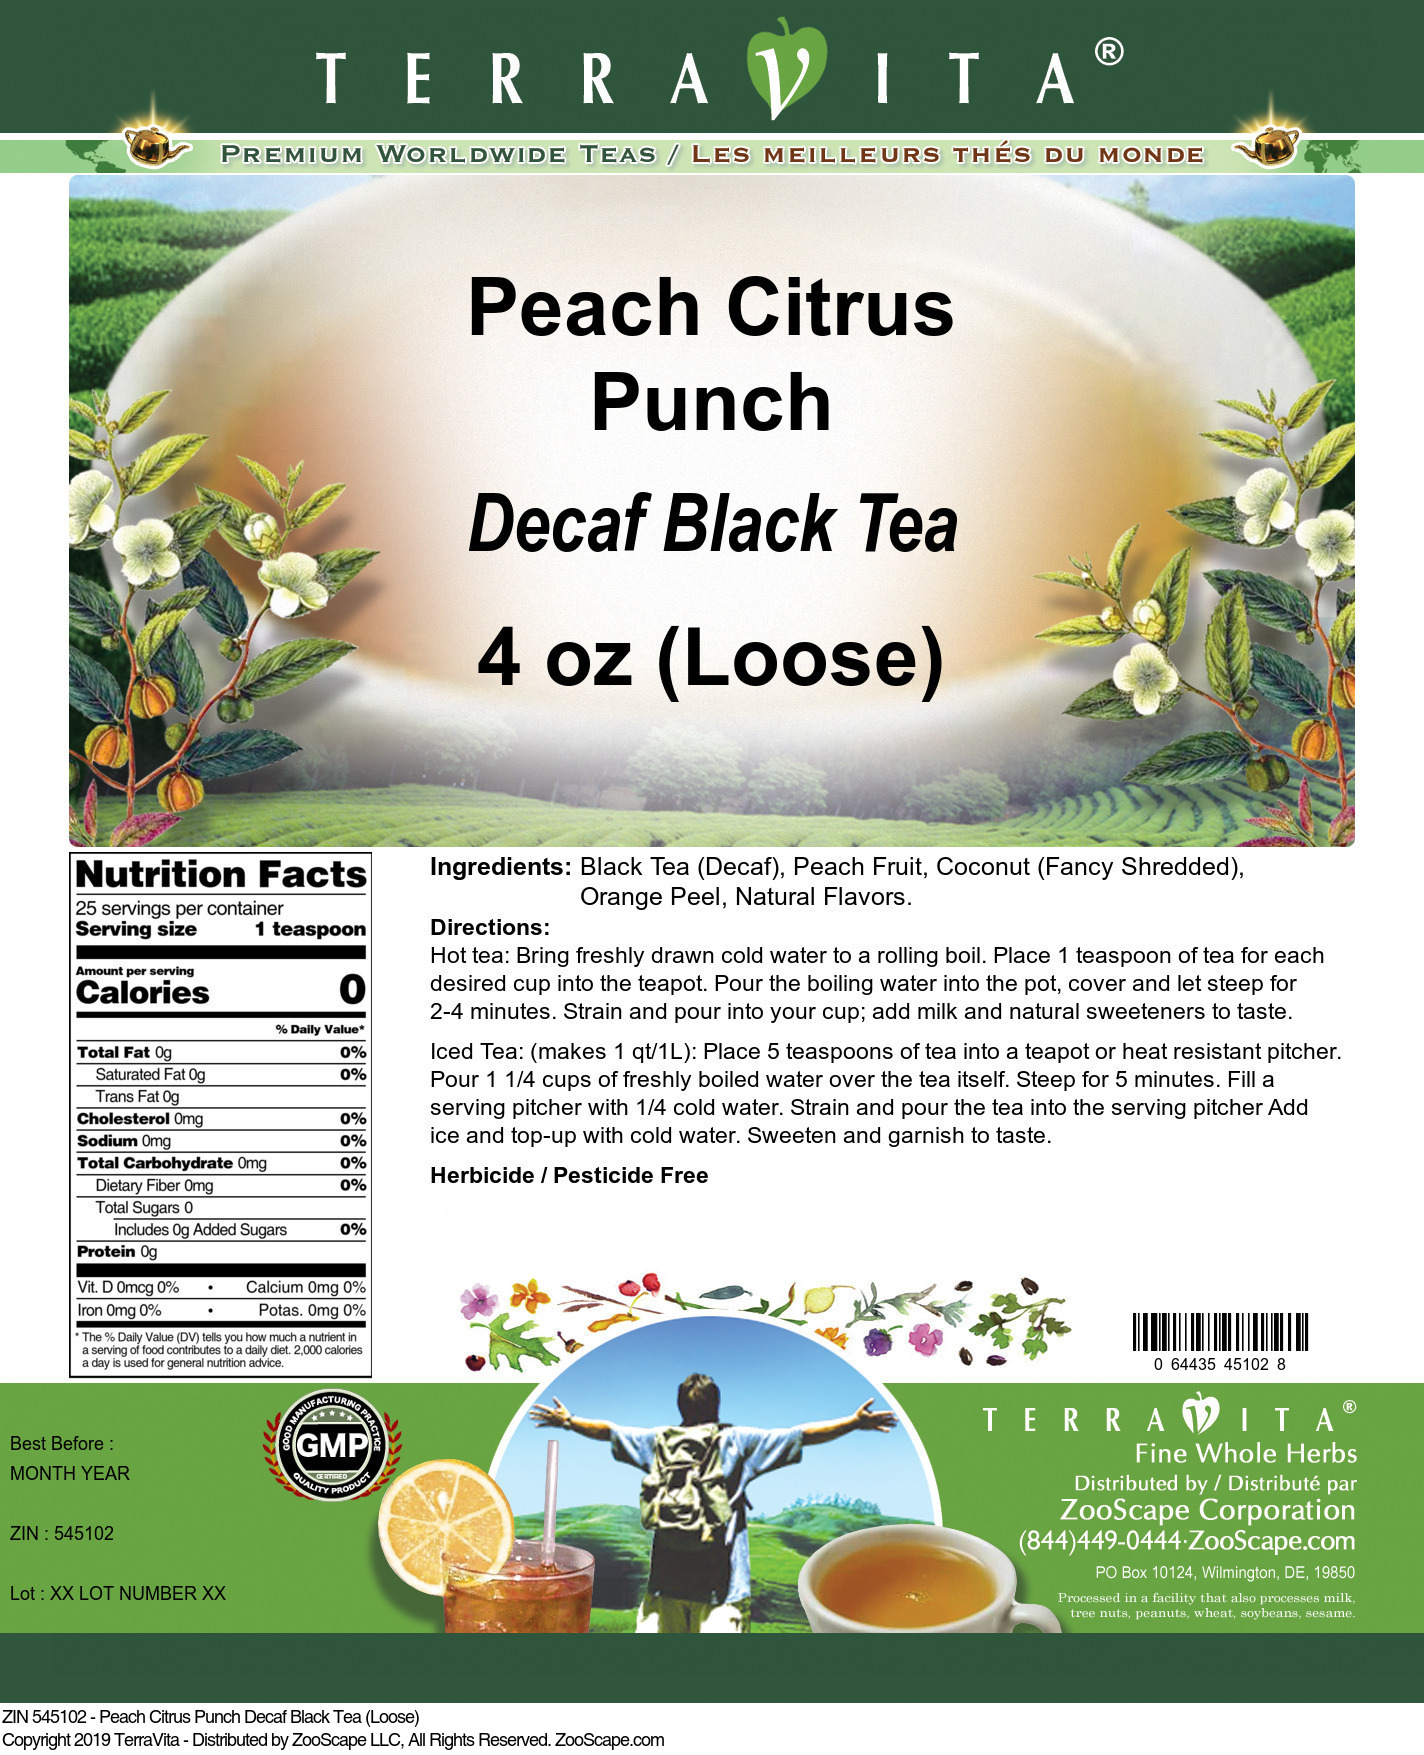 Peach Citrus Punch Decaf Black Tea (Loose) - Label